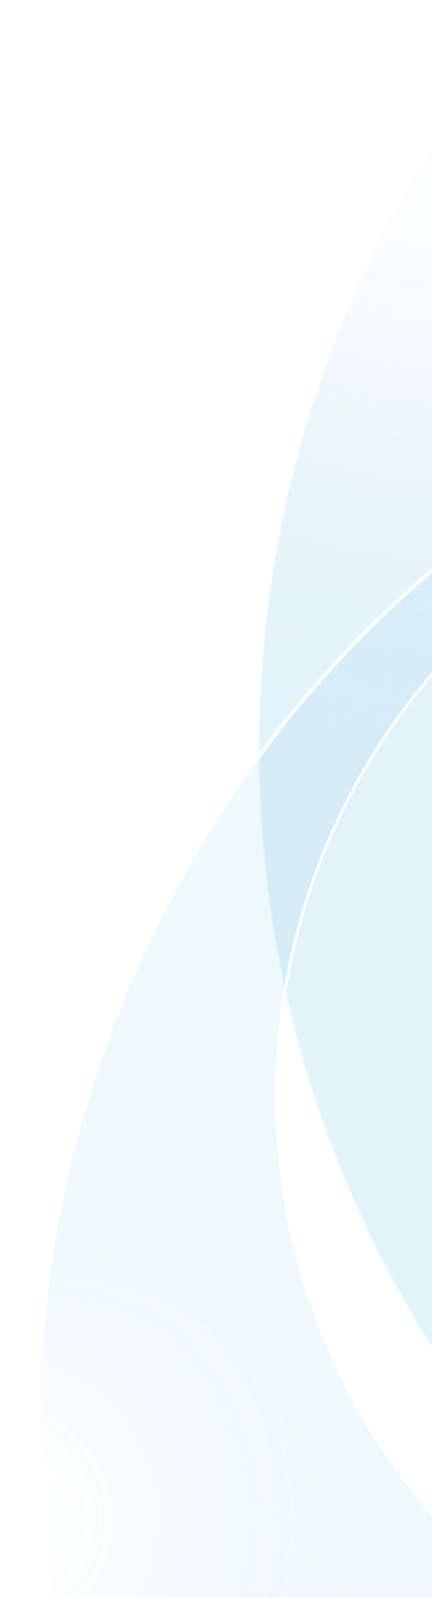 27.8.2018 Ympäristöministeriö kirjaamo@ym.fi Viite: 2.8.2018 päivätty lausuntopyyntö, VN/4123/2018-YM-1 Lausunto luonnoksesta ympäristöhallinnon oppaaksi Pohjavesialueet - opas määrittämiseen,